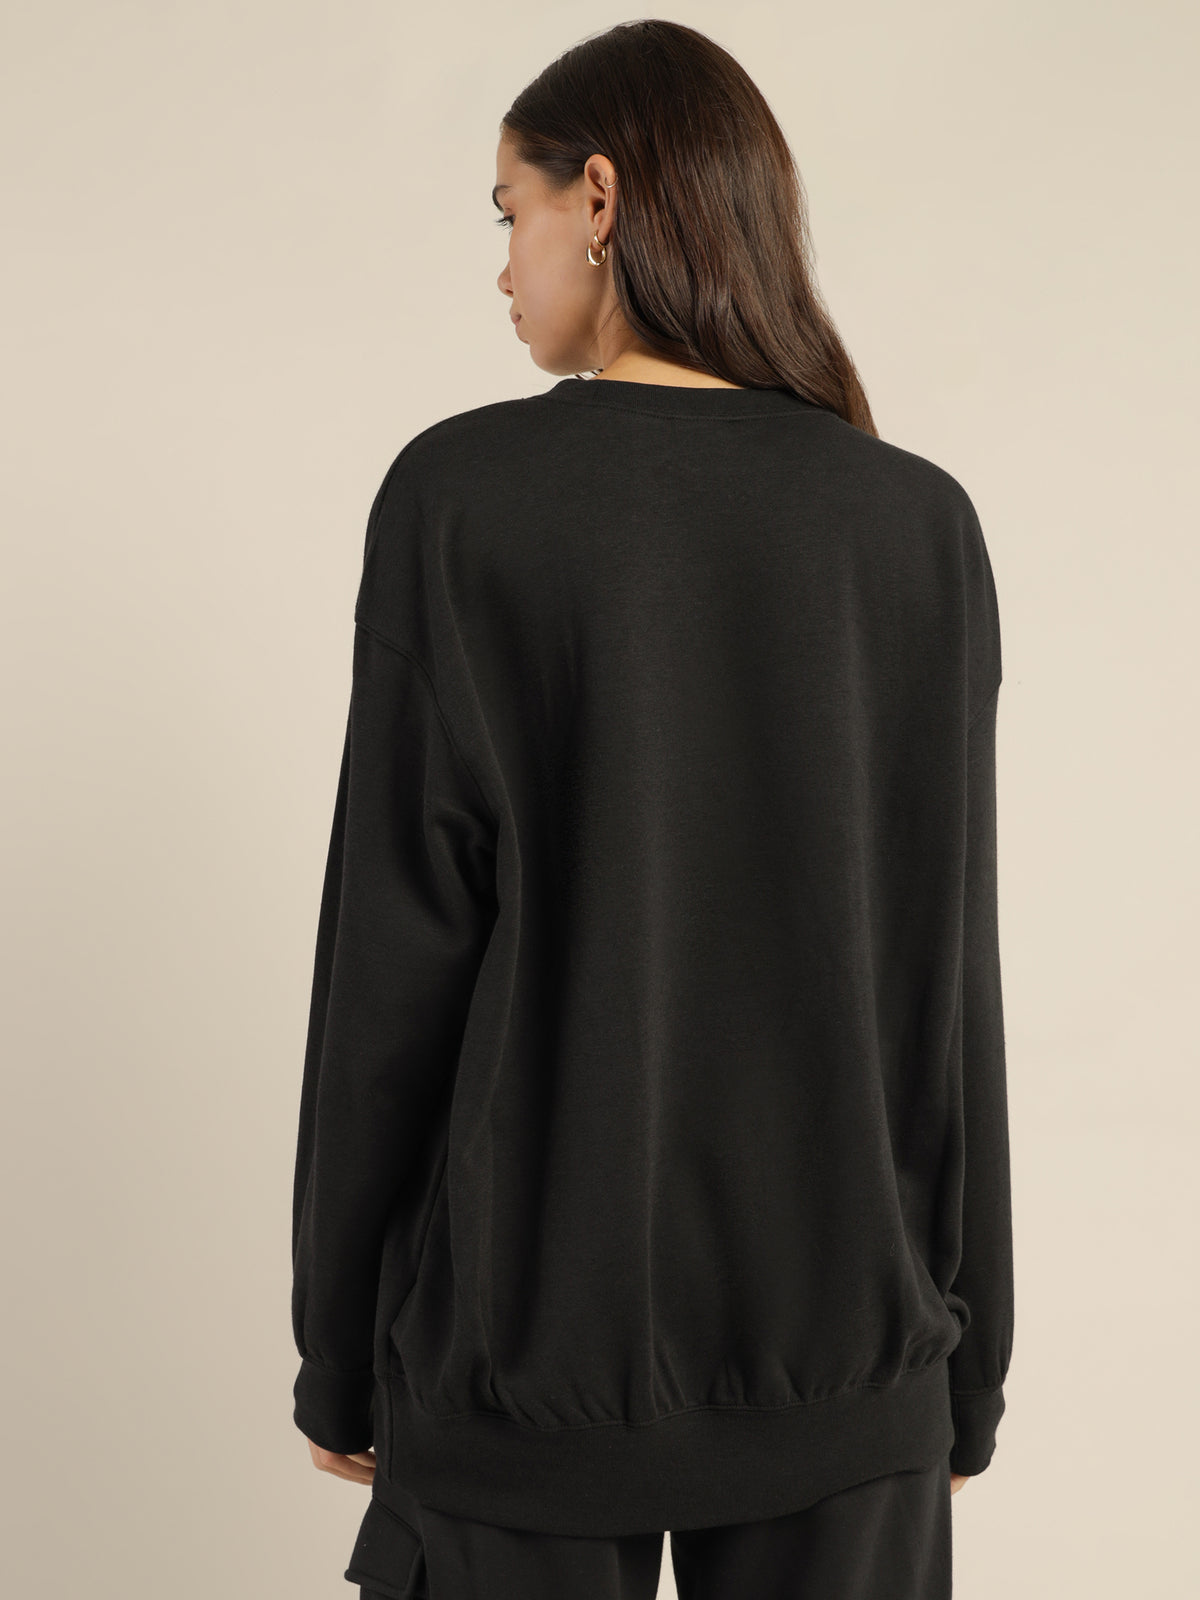 Sportswear Fleece Crew Sweater in Black &amp; White